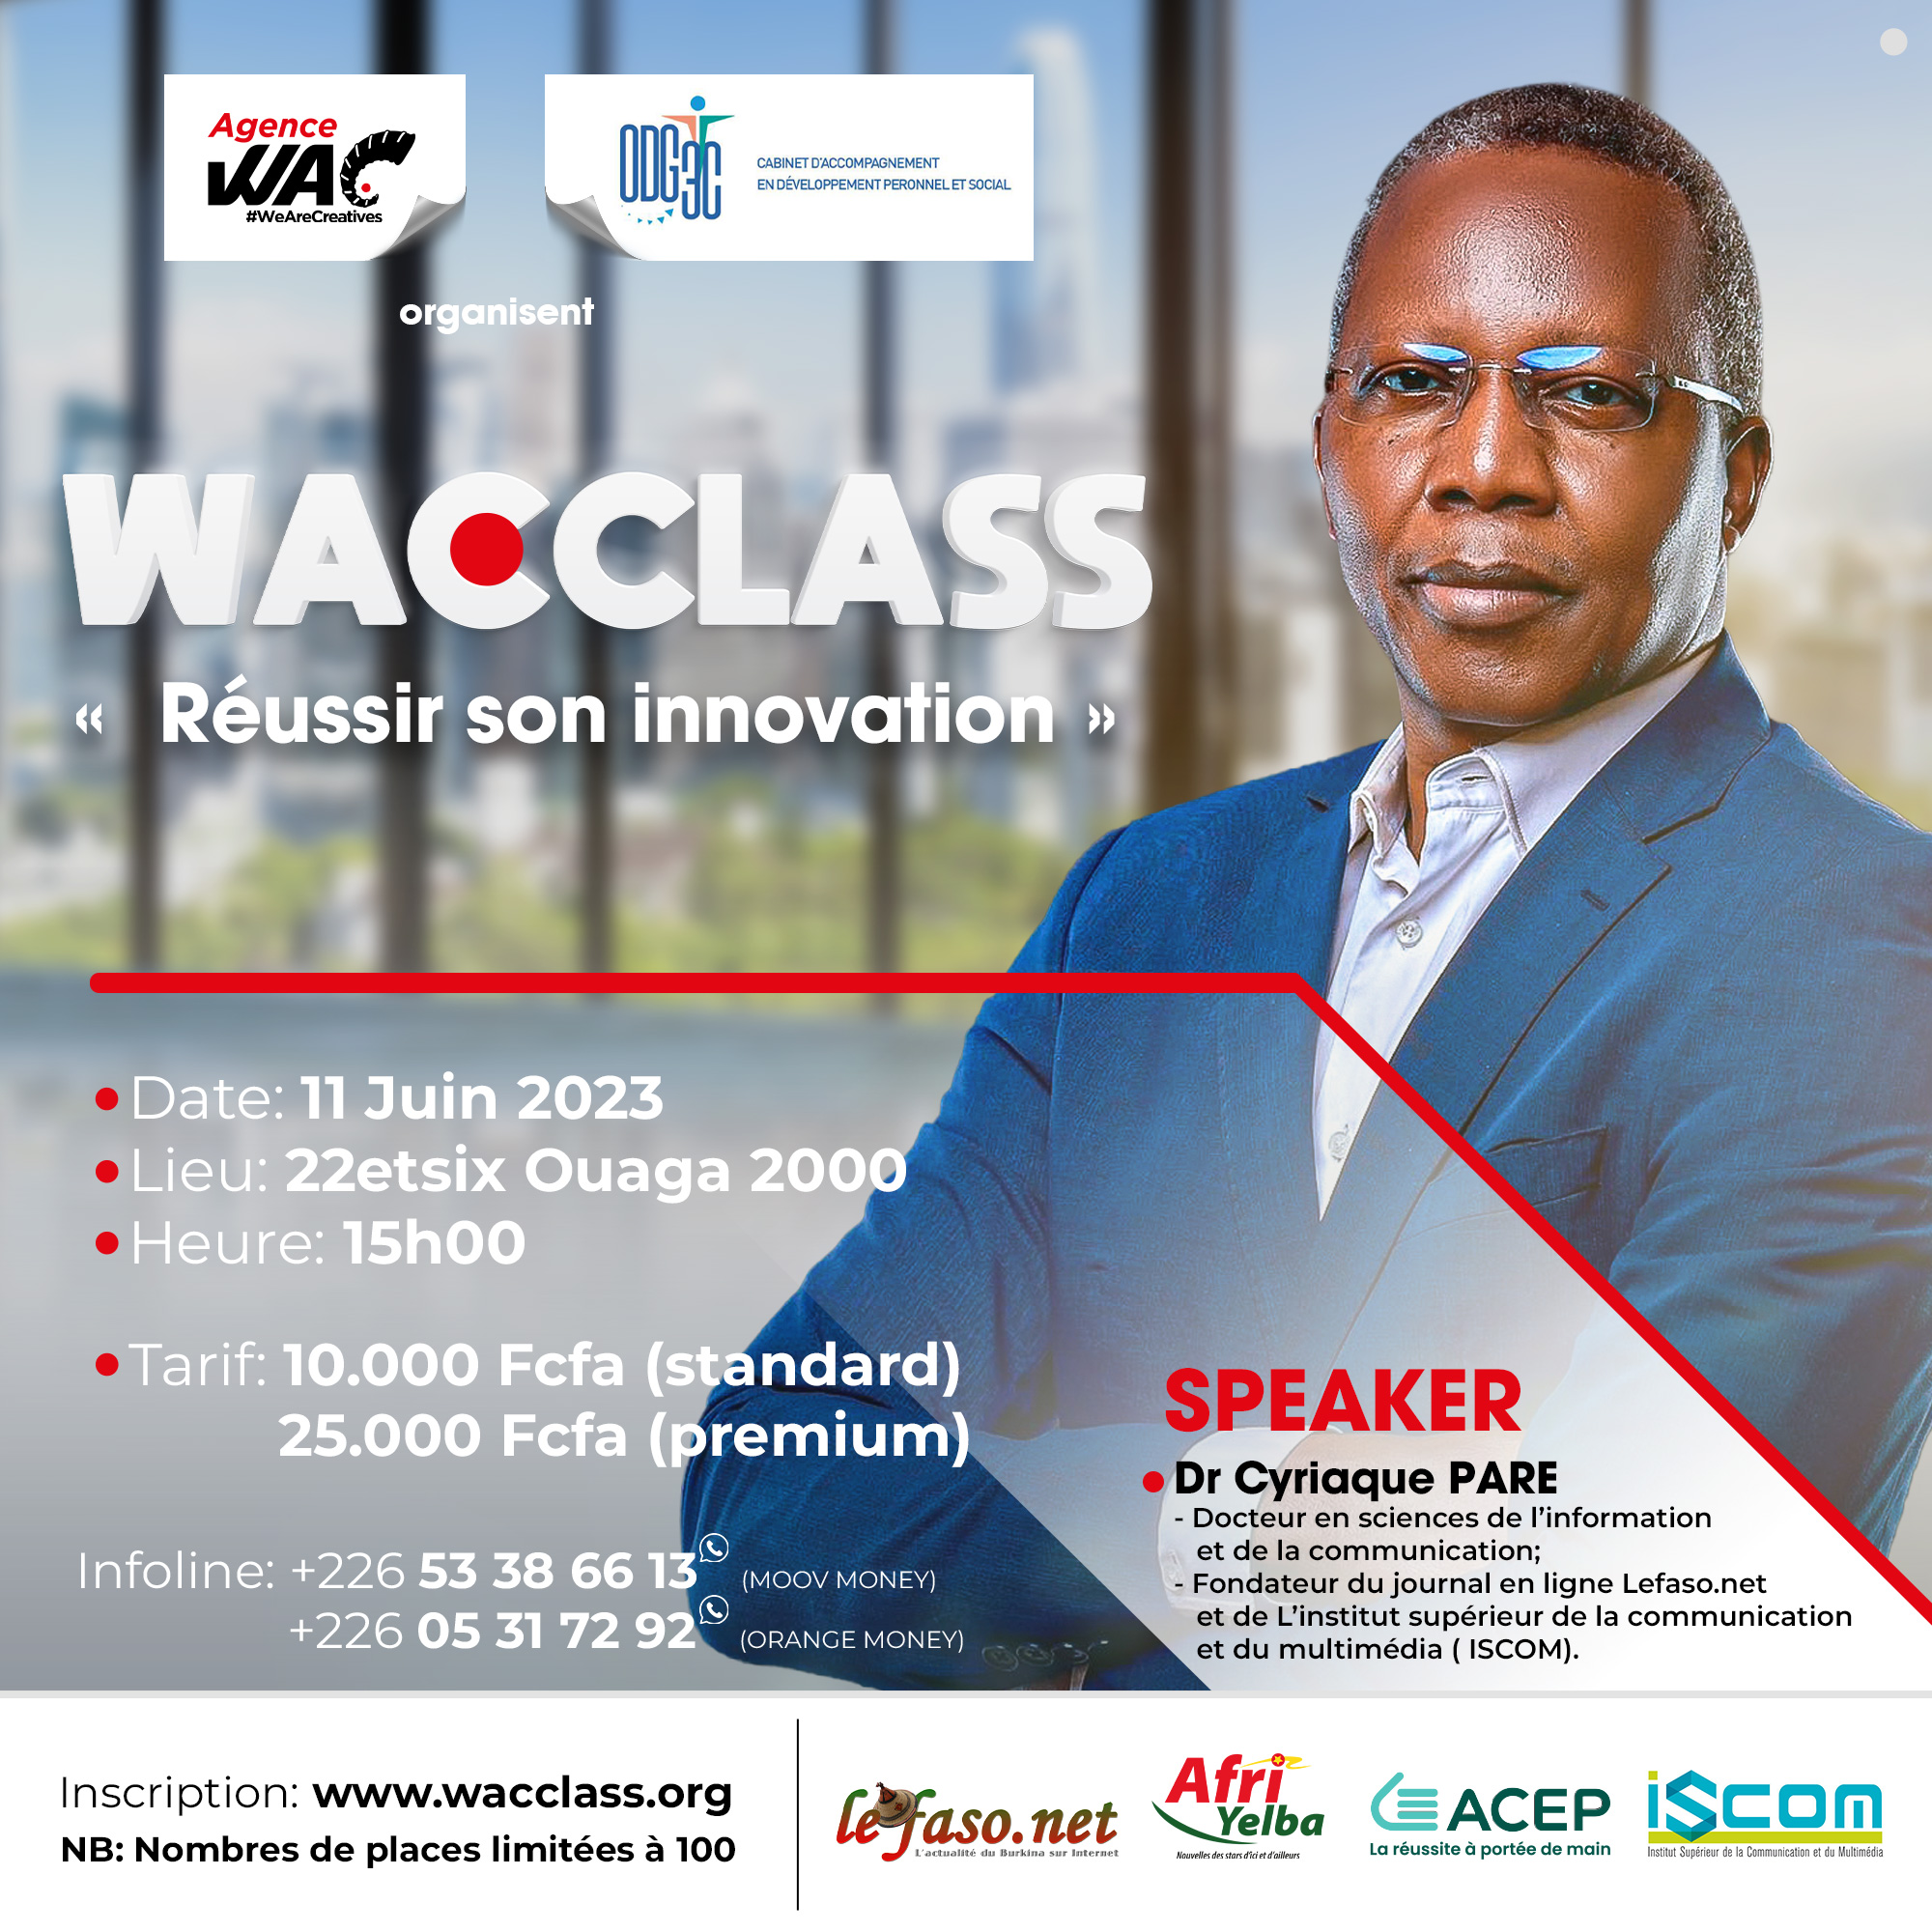 Première édition des WACCLASS de l’agence WAC. Thème : « Réussir son innovation ». Le dimanche 11 juin 2023 au 22etsix à Ouaga 2000